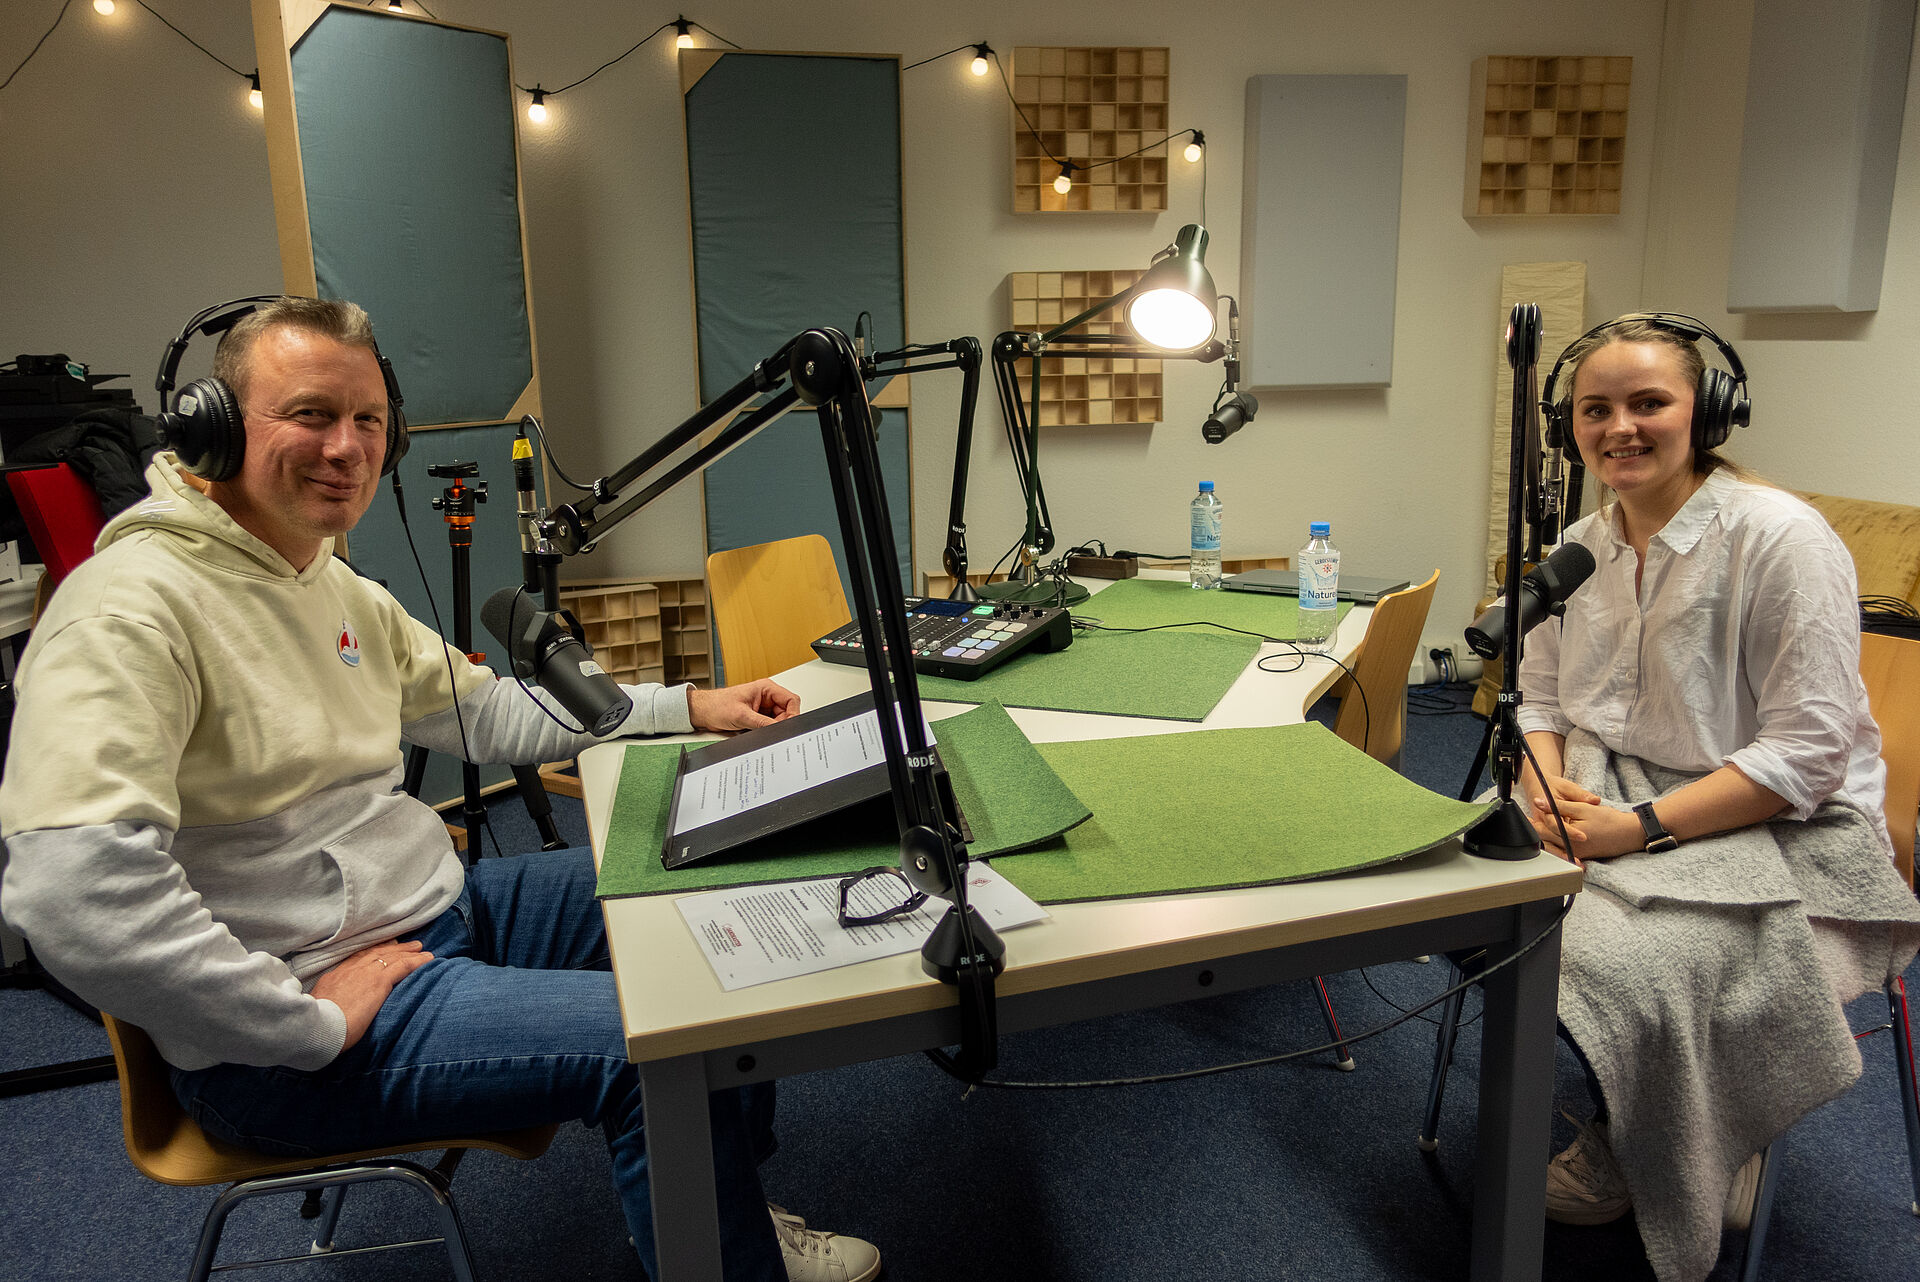 Zu sehen sind Knud Ahlborn und Pia Krone in einer Podcast-Aufnahme-Situation.